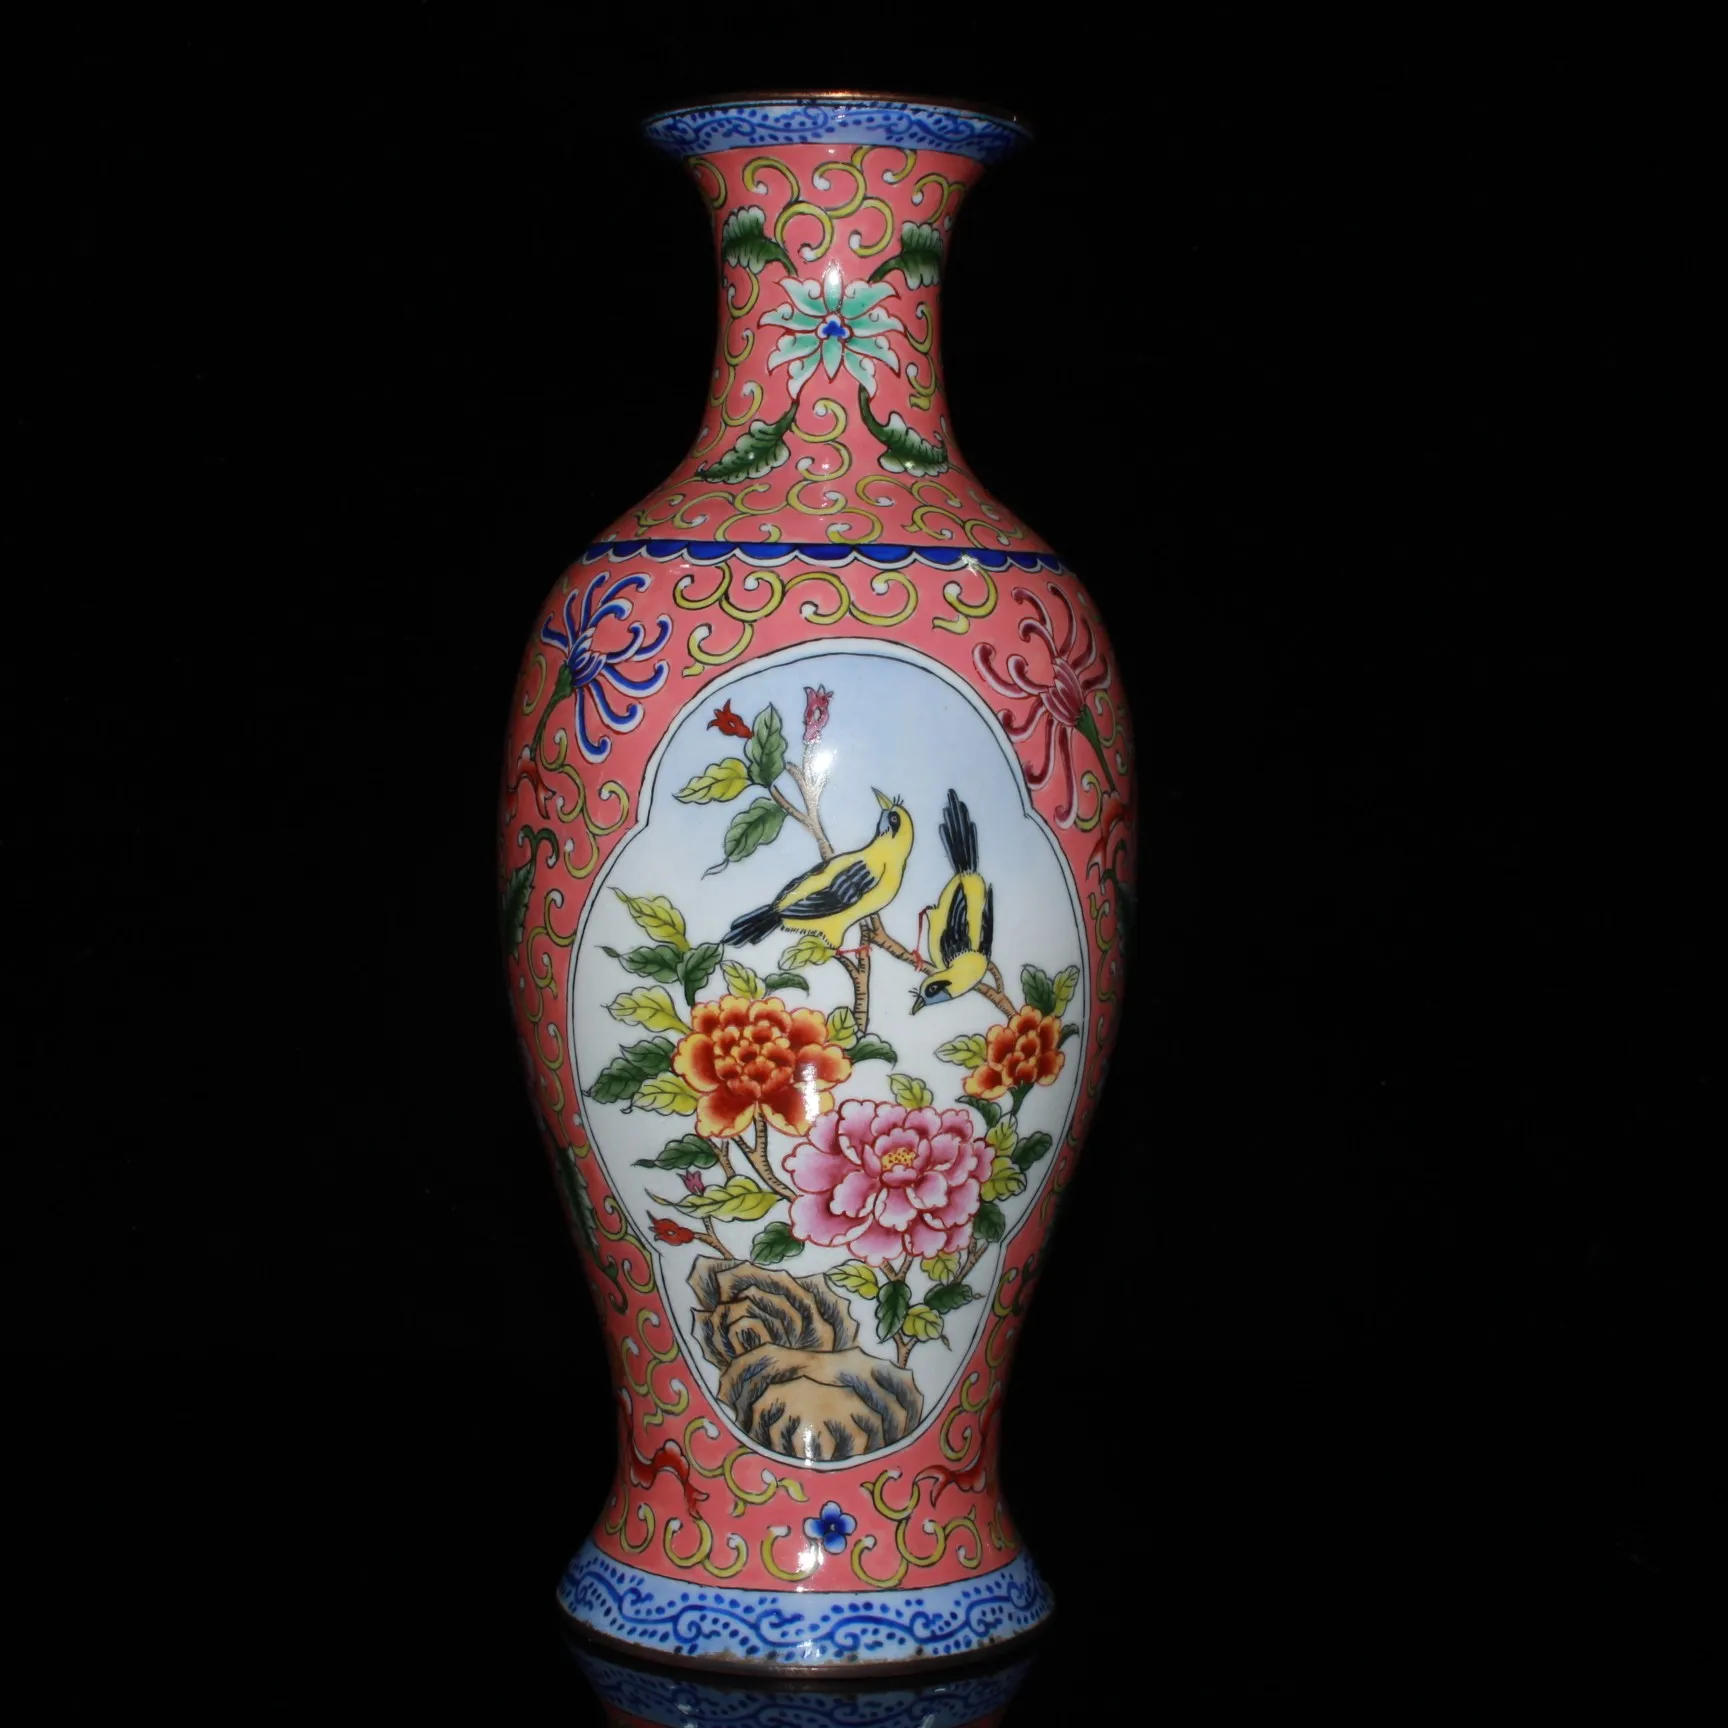 

Китайская антикварная ваза, старинная медная эмаль ручной работы, 2 украшения в виде птиц, украшение для дома, нижняя часть с надписью Qianlong